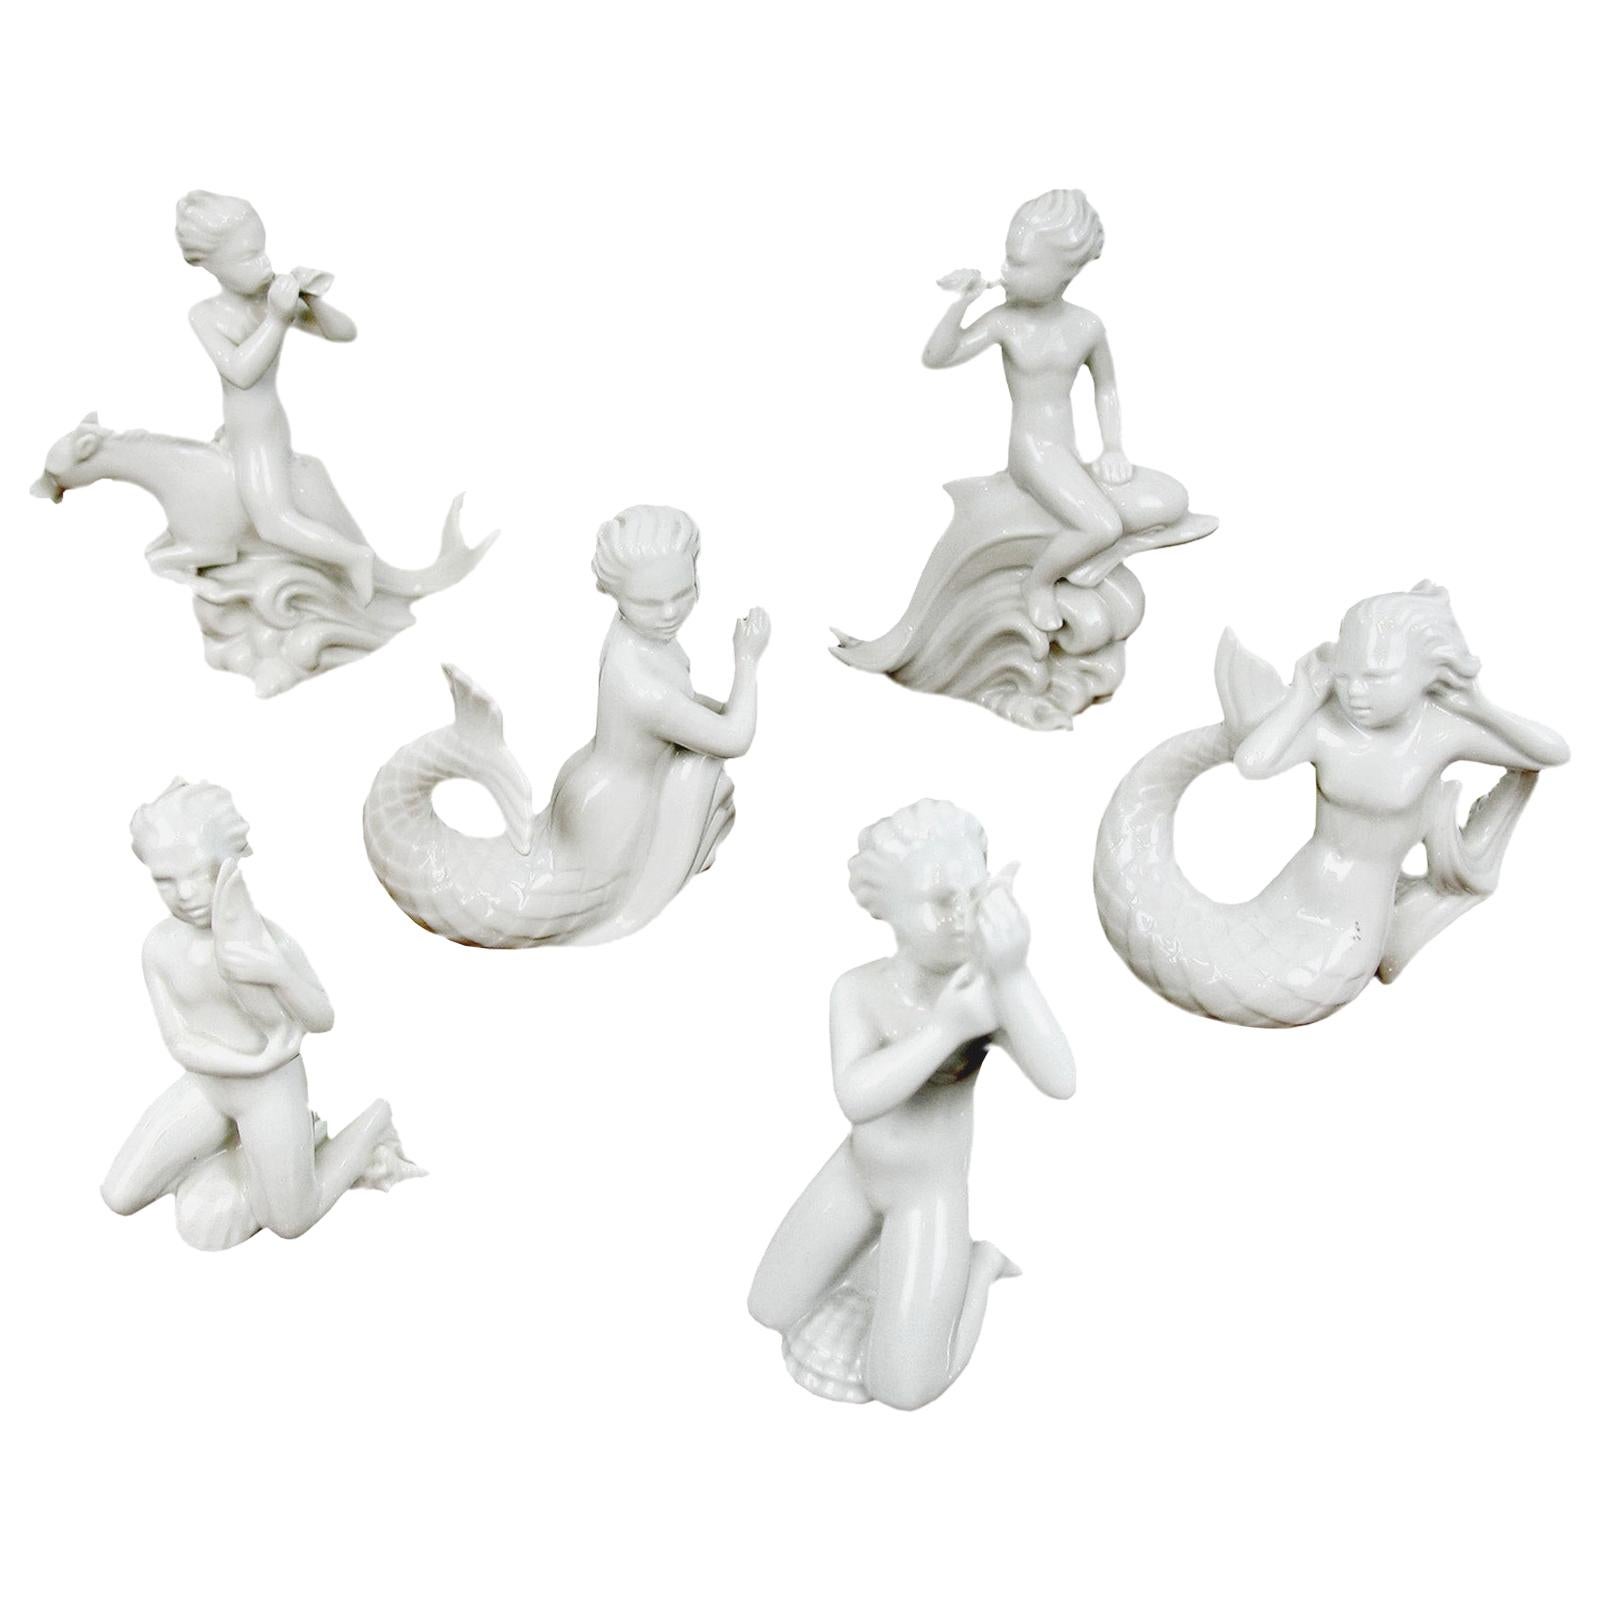 Harald Salomon for Rrstrand, ensemble de six figurines émaillées blanches Blanc de Chine